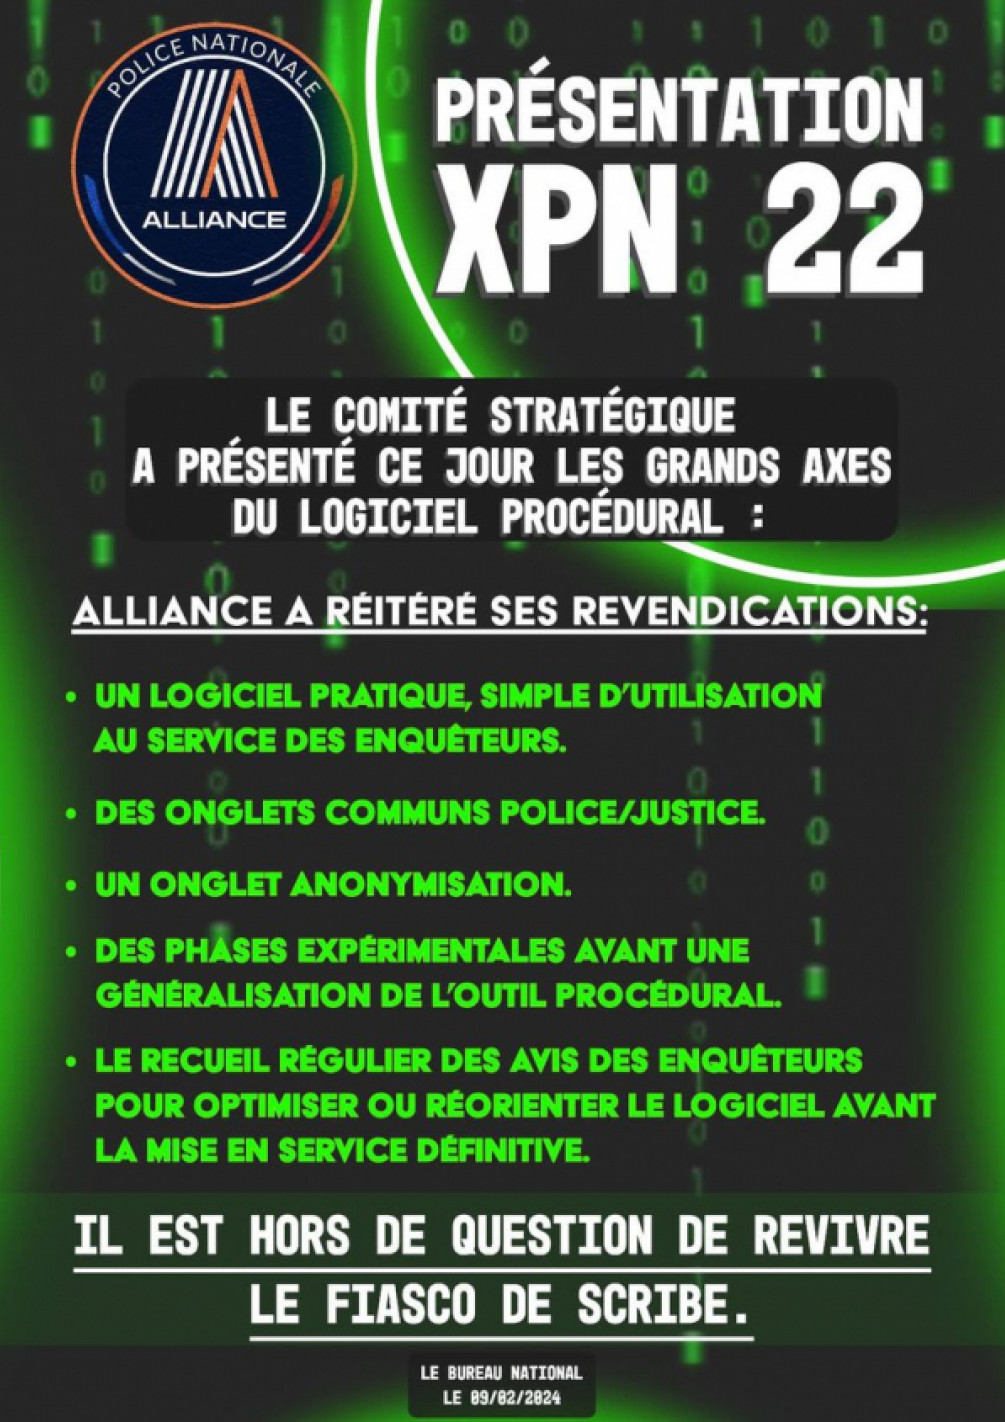 XPN22 